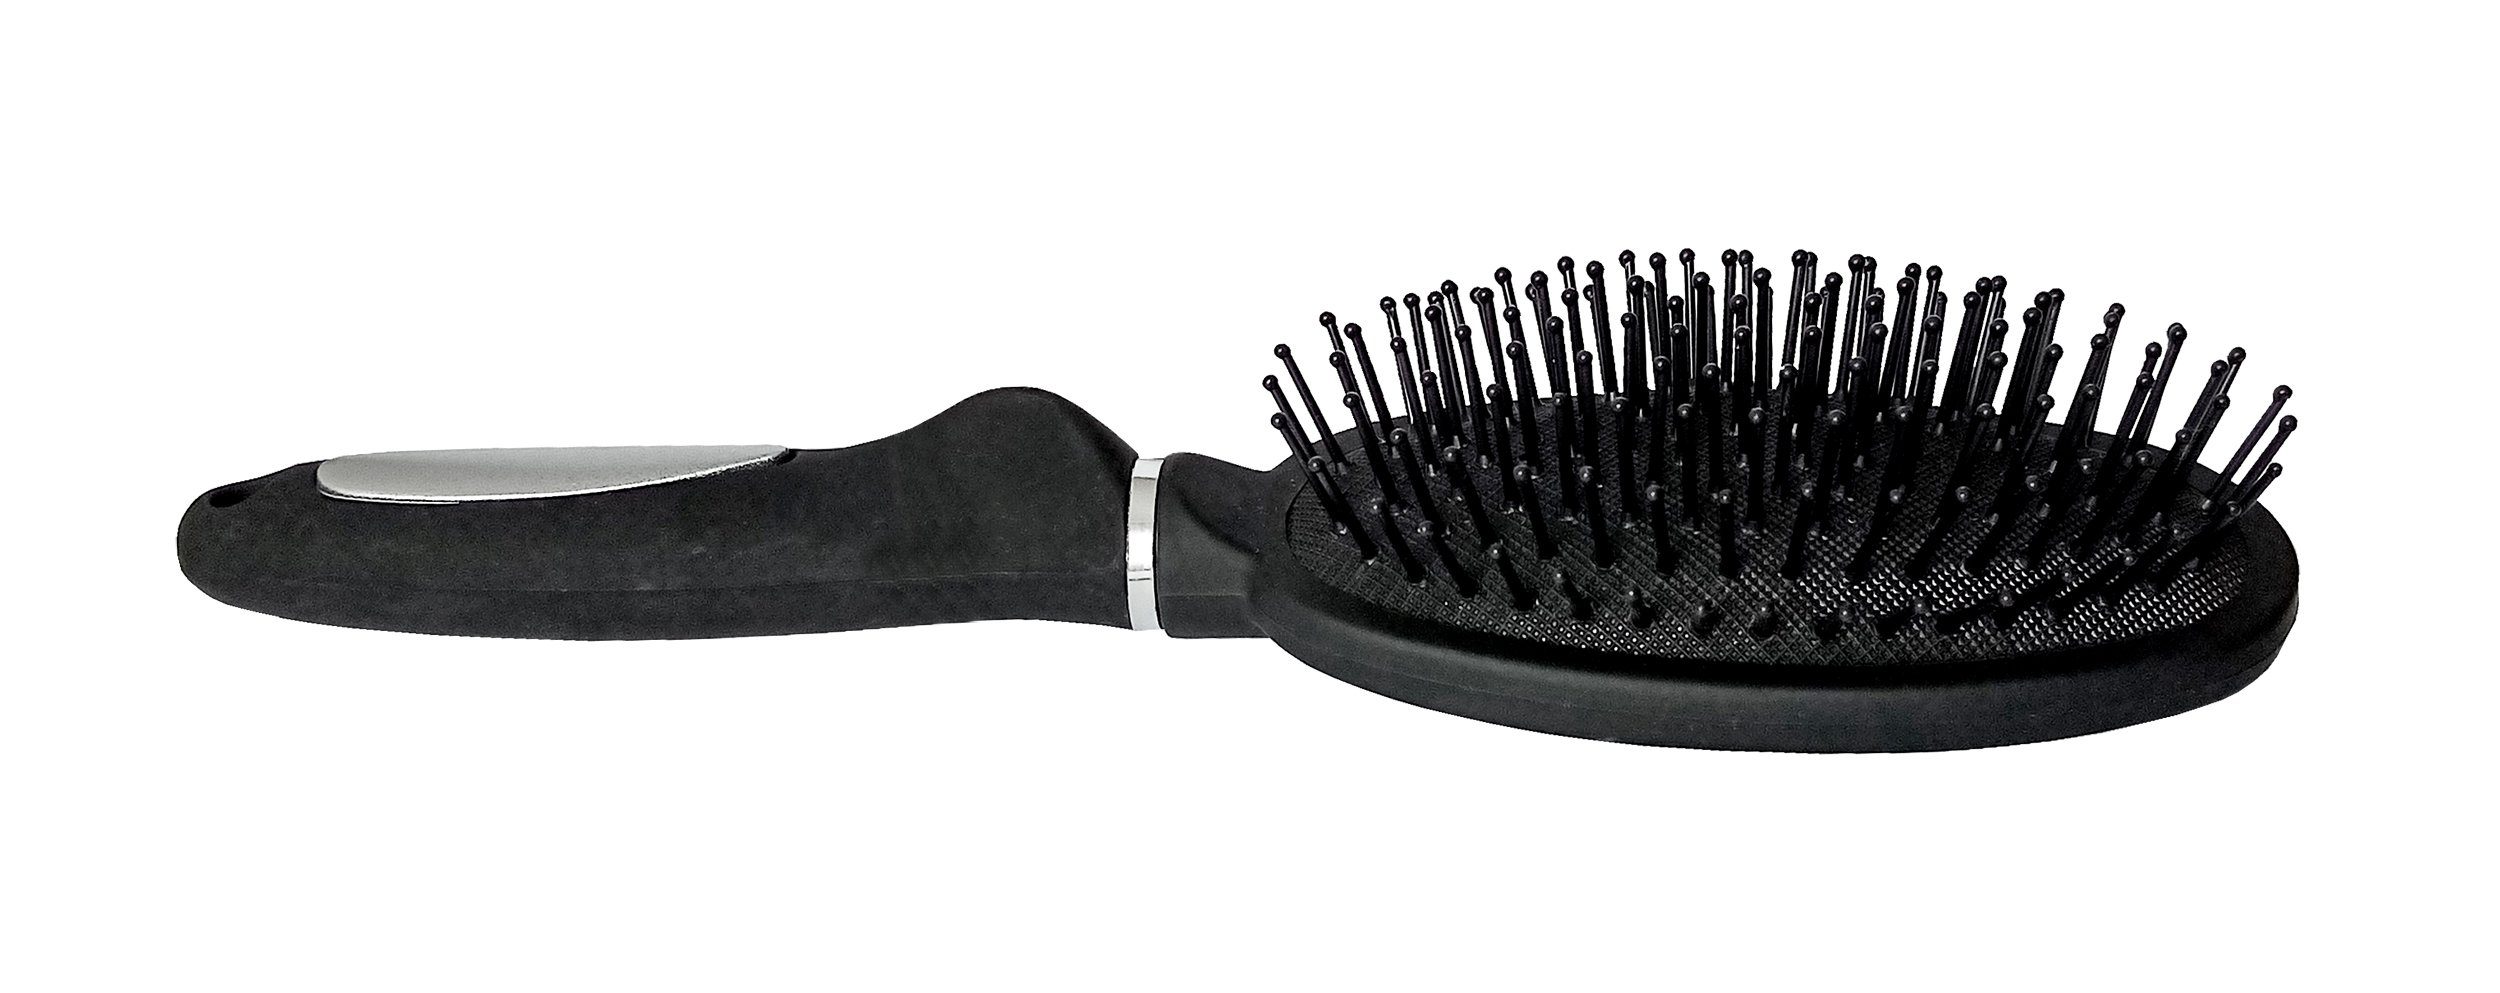 Fönbürste Noppen Haarpflege mit Haar HAARBÜRSTE Kamm Massagebürste 58 (Allzweckbürste), Massage Lifetime Bürste Allzweck Allzweckbürste schwarz Haarbürste